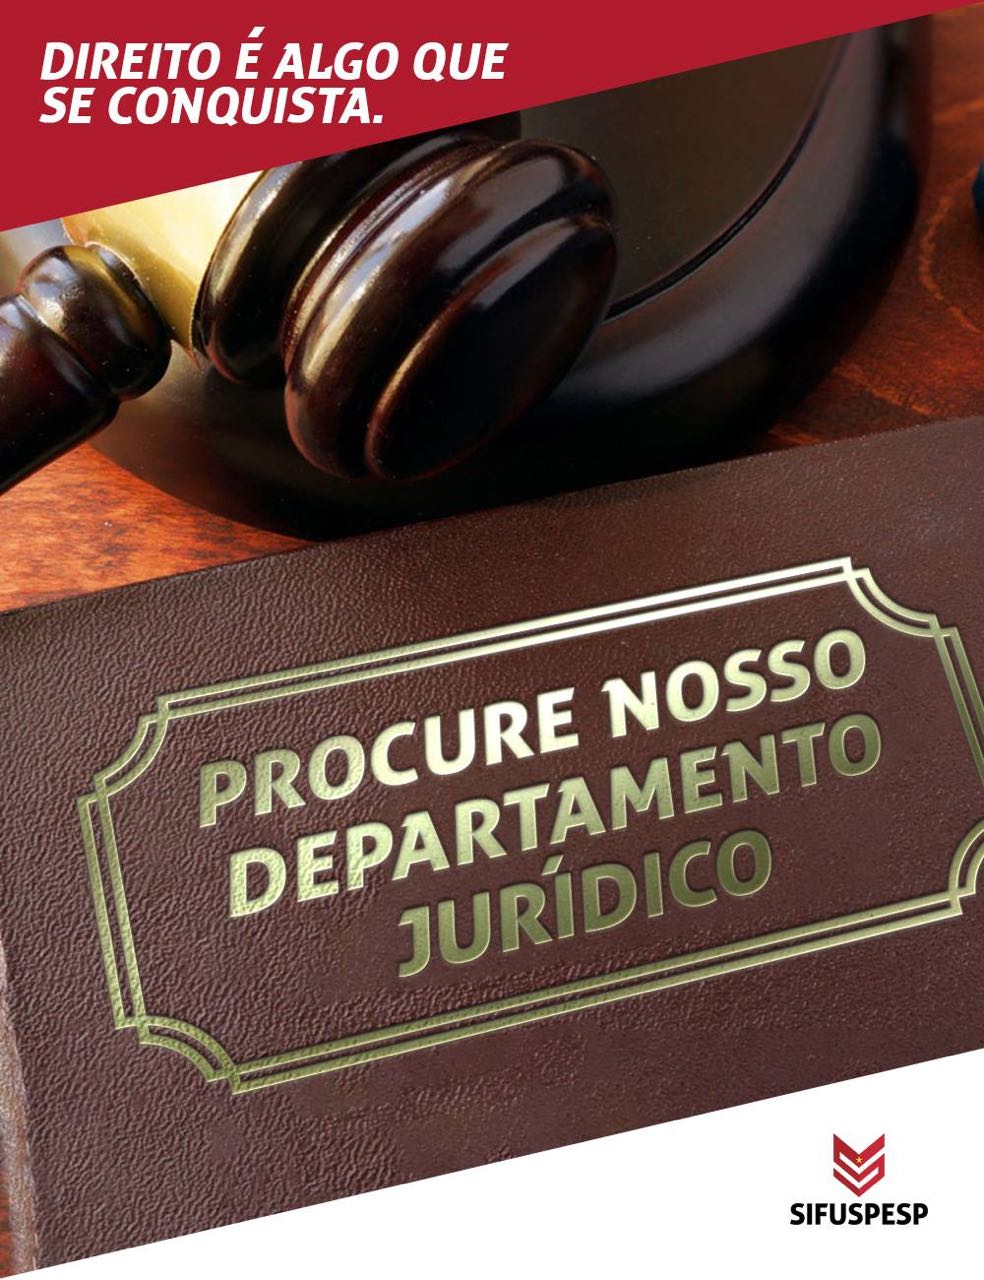 Departamento Jurídico do SIFUSPESP na Baixada muda atendimento pessoal de São Vicente para Santos